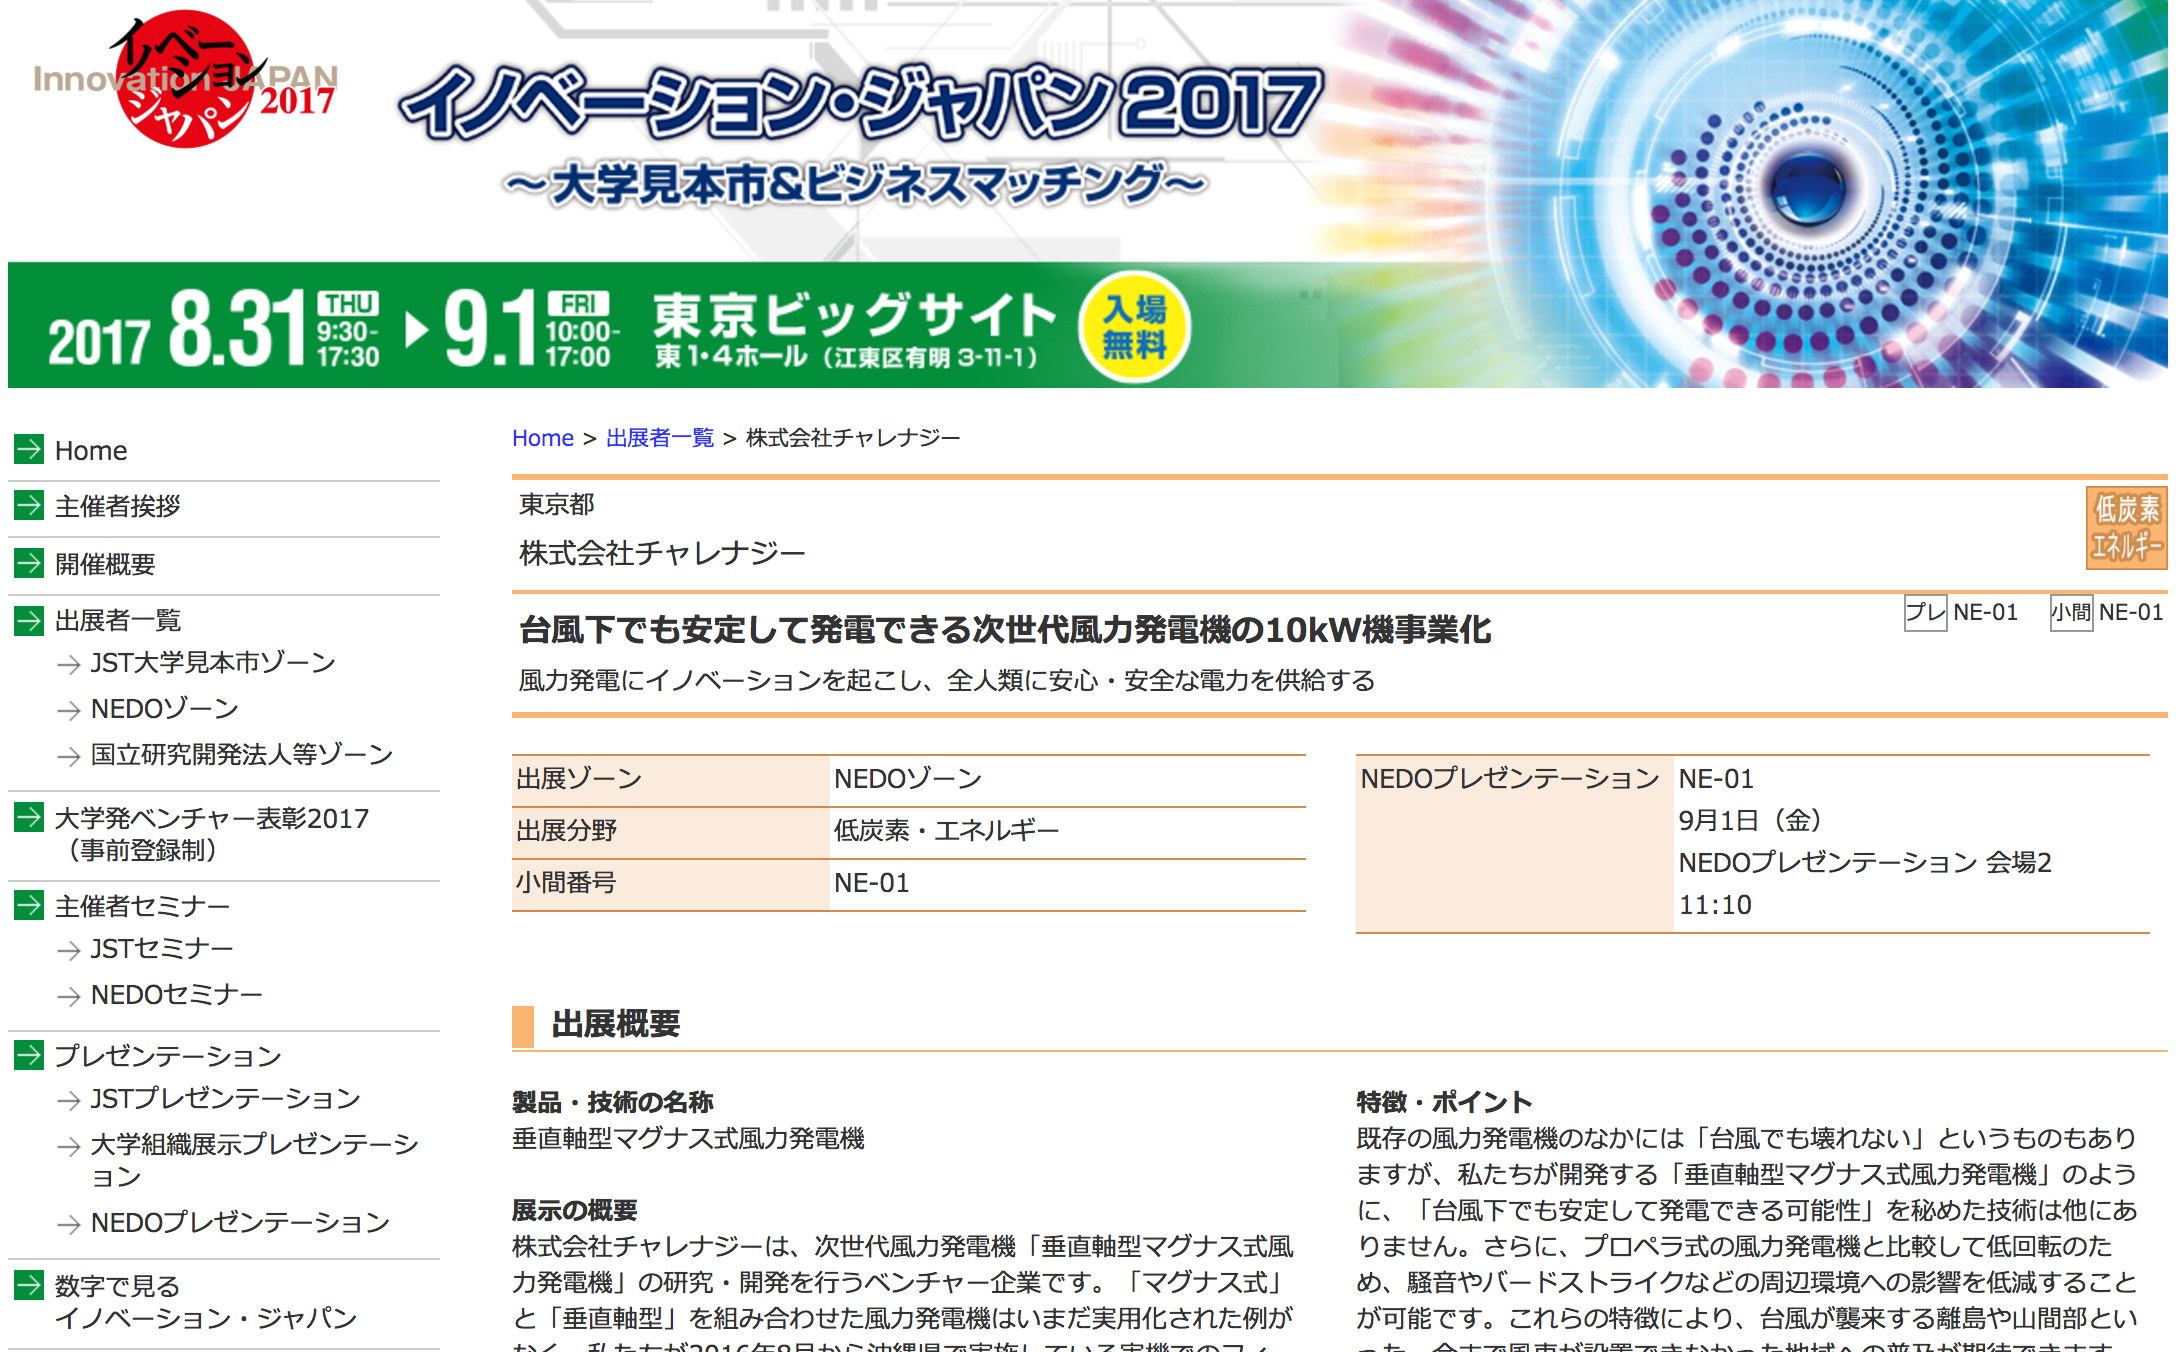 170805_innovation japan 2017.png